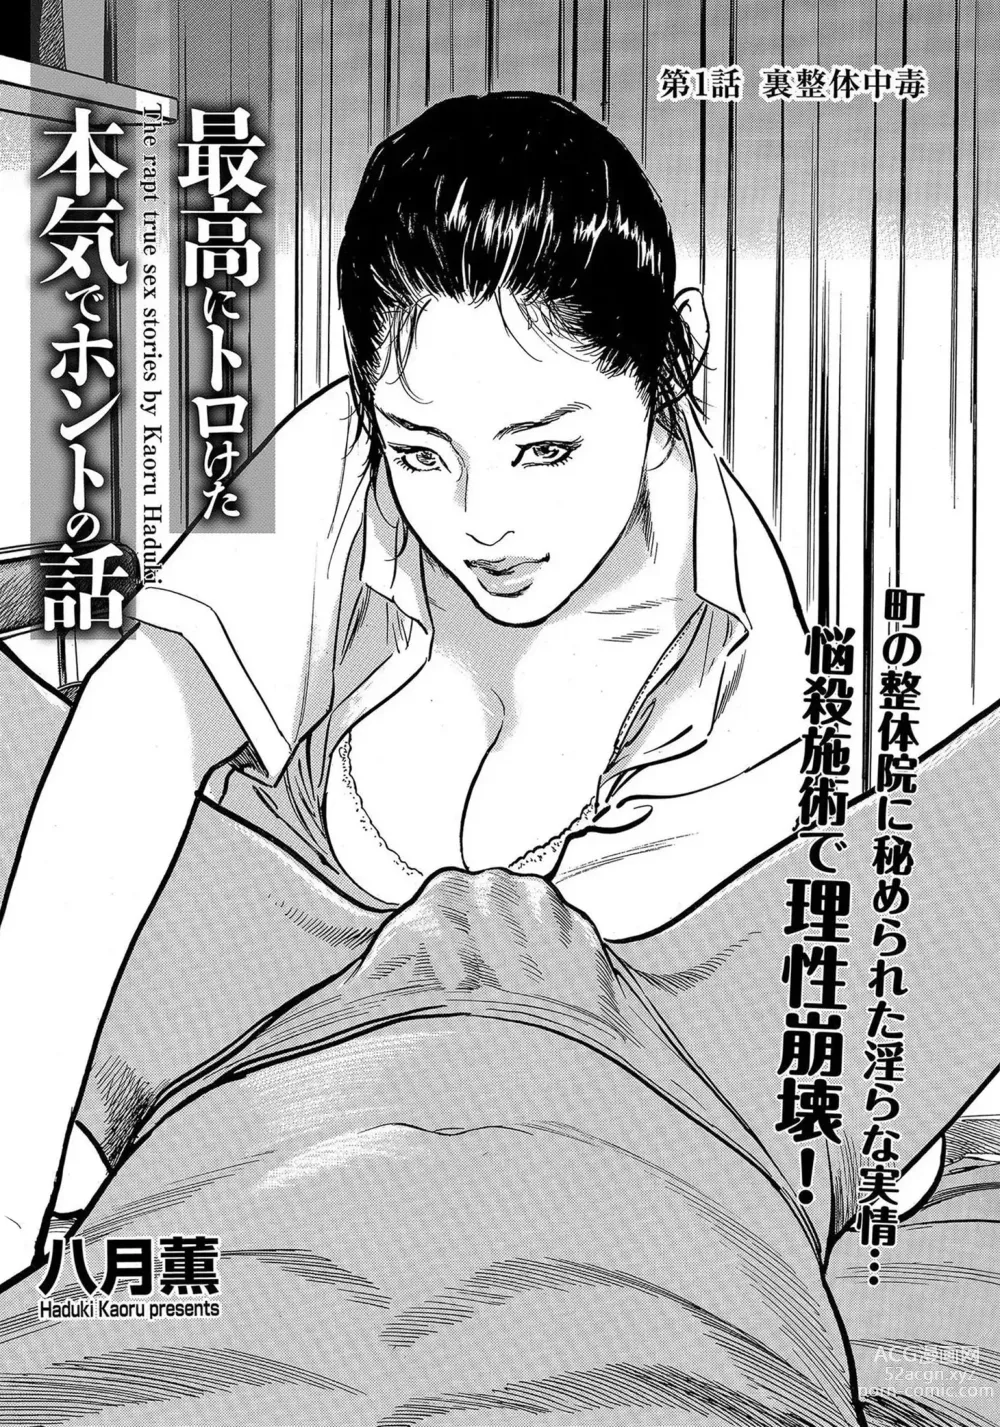 Page 2 of manga Saikou ni Toroketa Honki de Honto no Hanashi 16 episodes